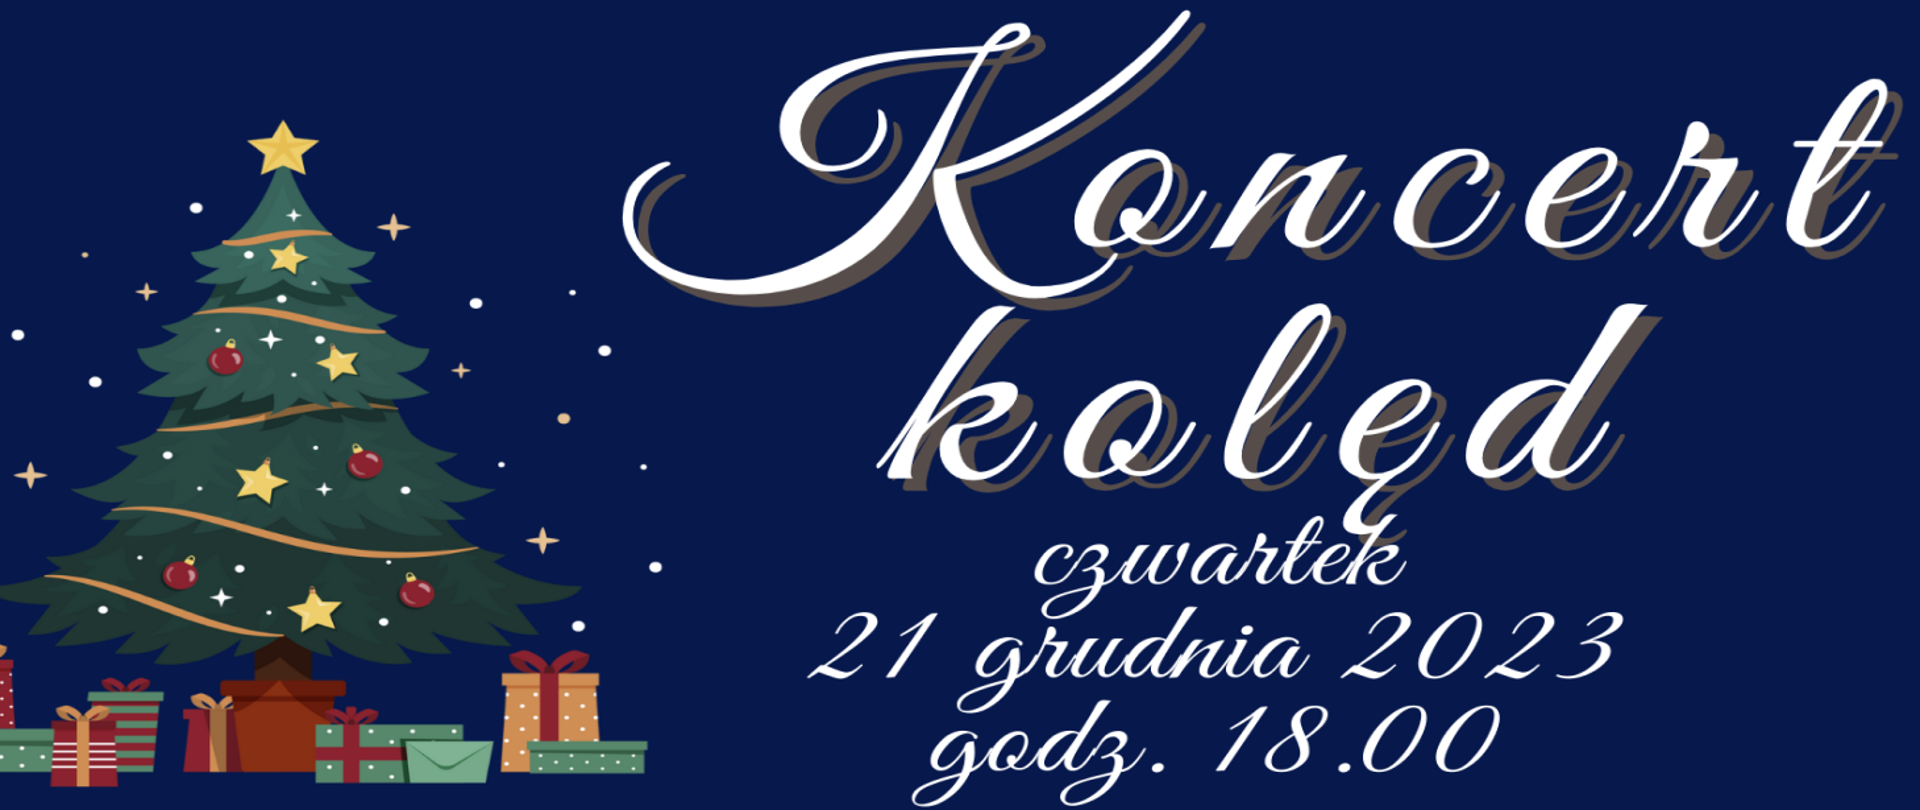 Granatowy baner ze świątecznym drzewkiem choinkowym, kolorowo przystrojonym, informuje o Koncercie Kolęd, który odbędzie się 21.12.2023 r, o godzinie 18, w Sali Koncertowej szkoły.
